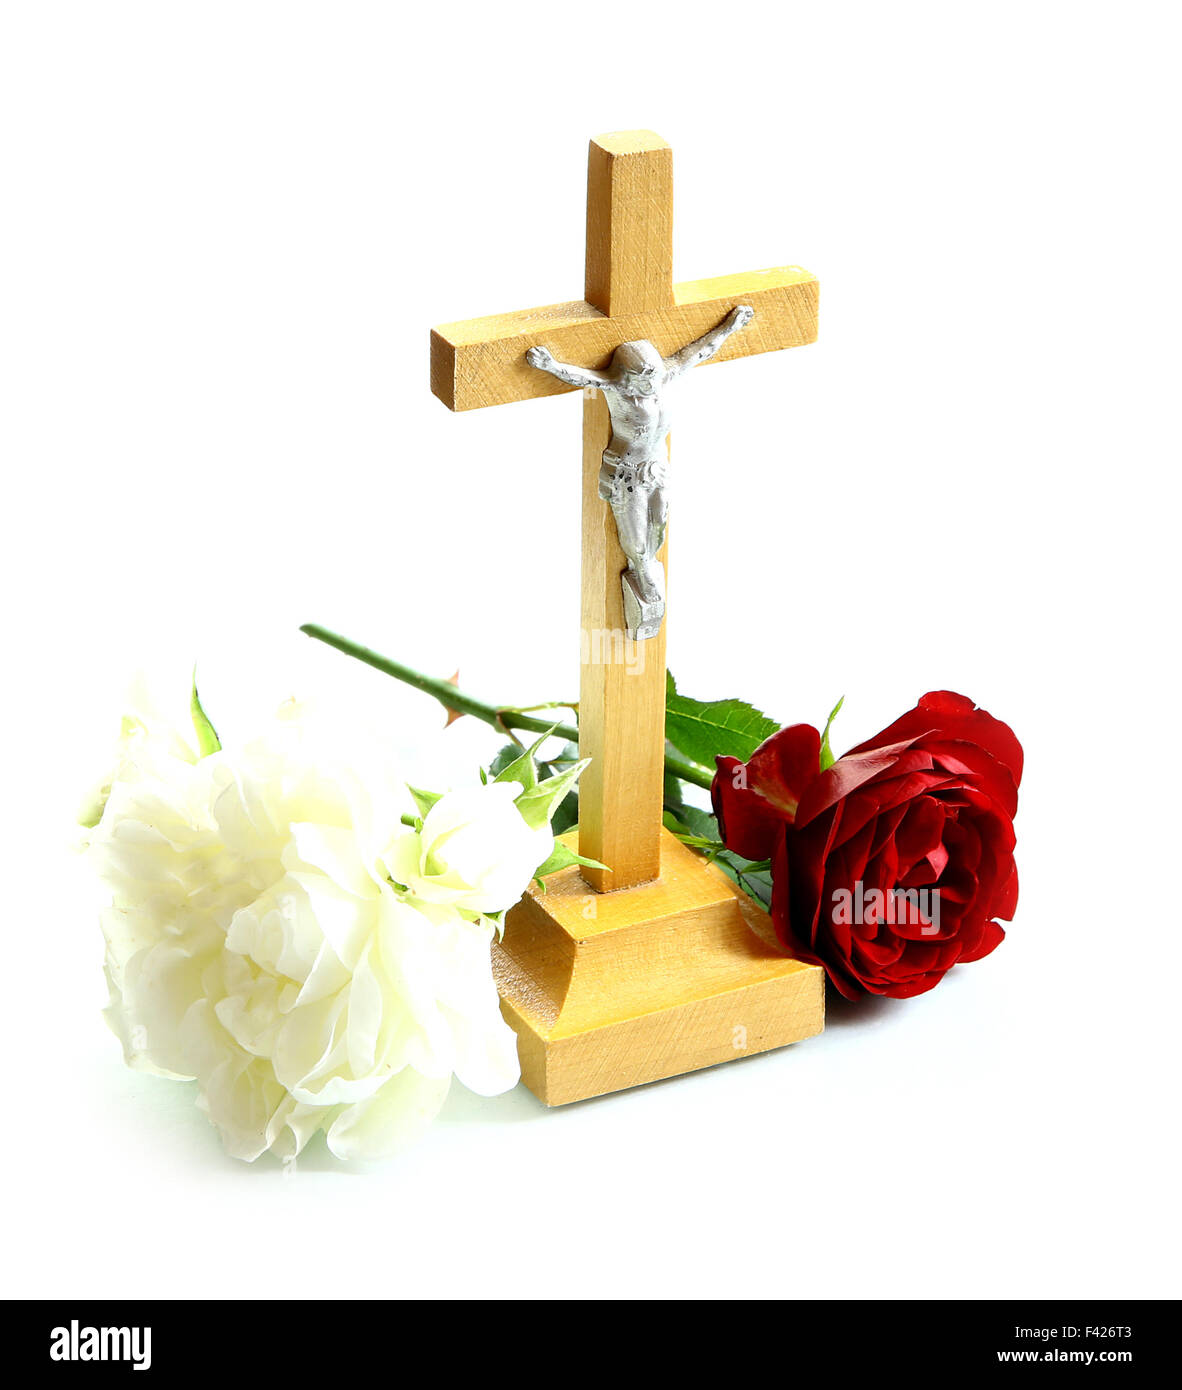 Molto semplice di legno santo crocifisso Gesù Cristo sulla croce lo sfondo bianco con rose bianche e rosse Foto Stock